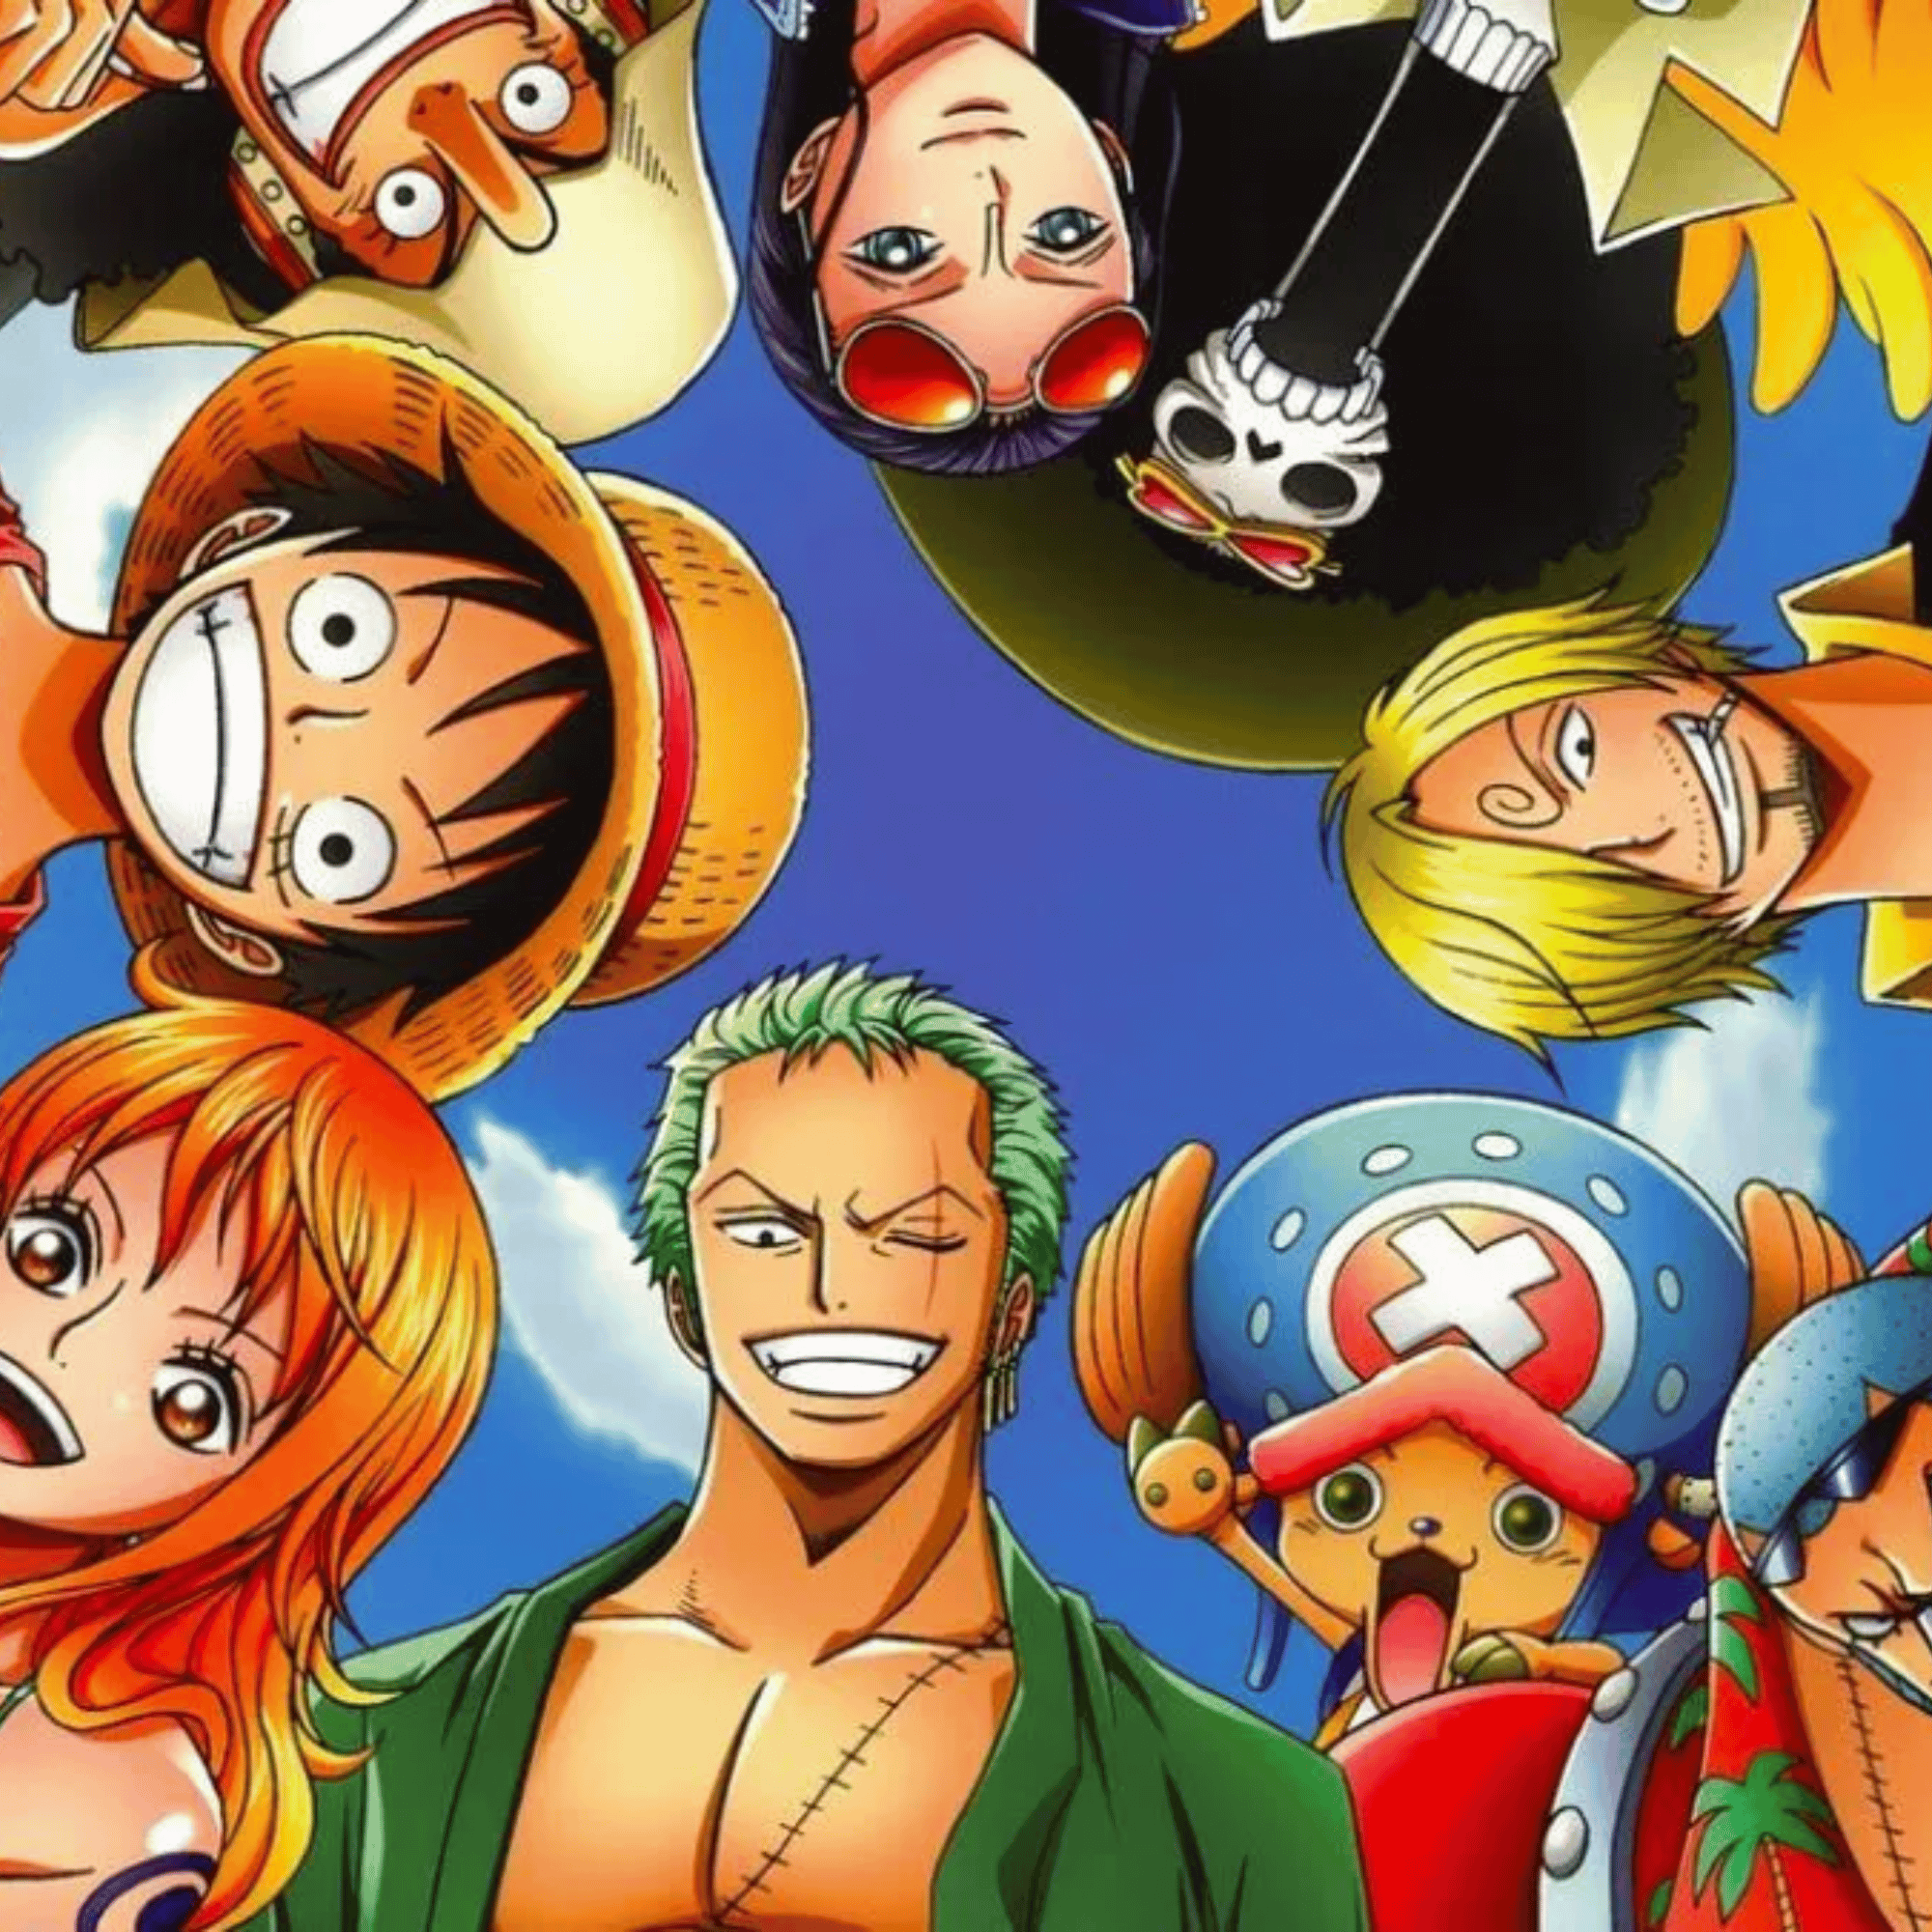 Kappa anuncia 2ª linha de roupa baseada em One Piece com Luffy